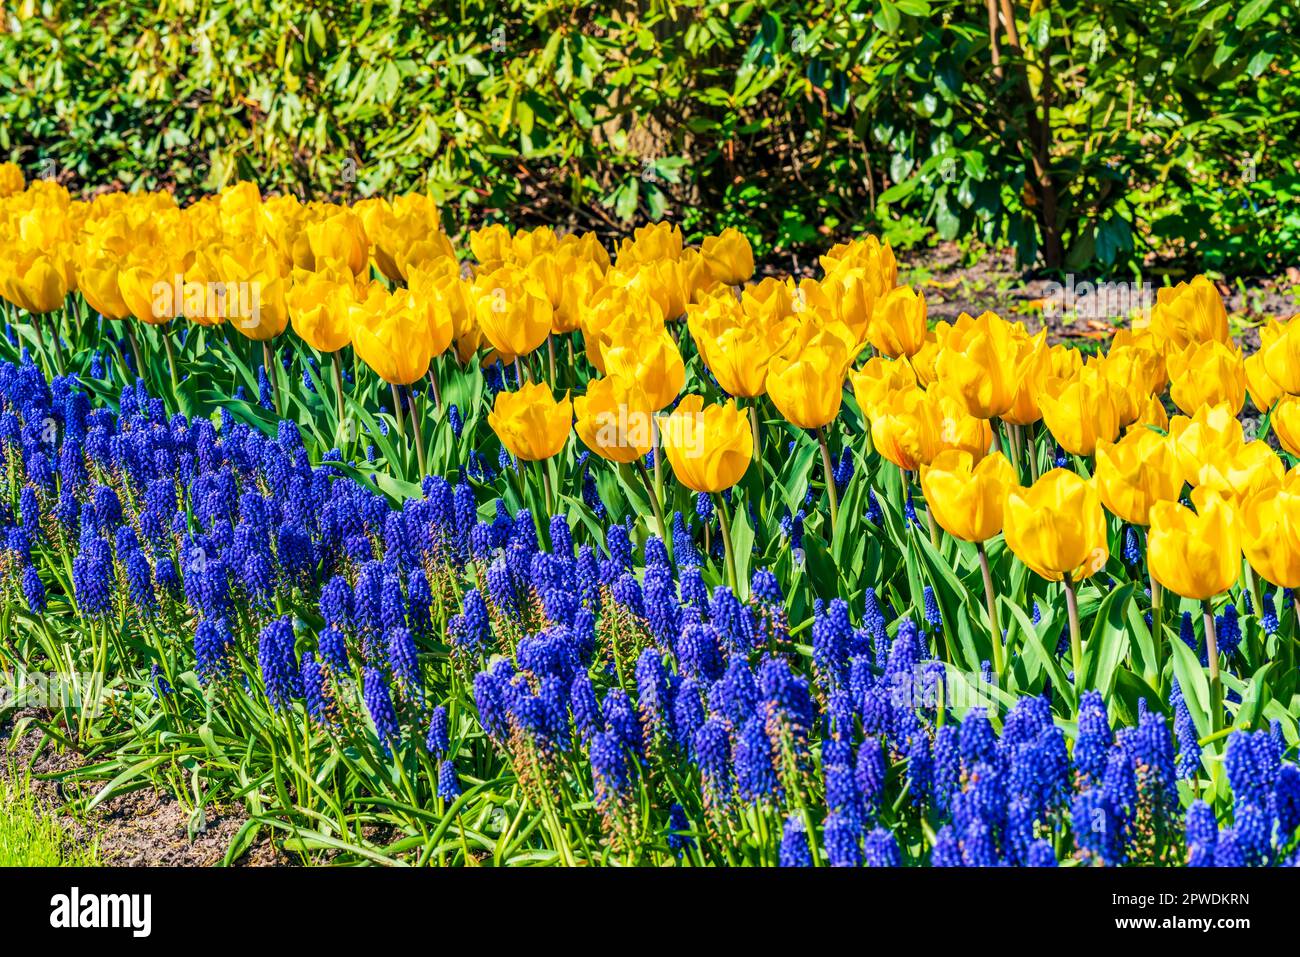 Magnifiques tulipes fleuris dans le jardin de Keukenhof en Hollande. Mise au point sélective Banque D'Images